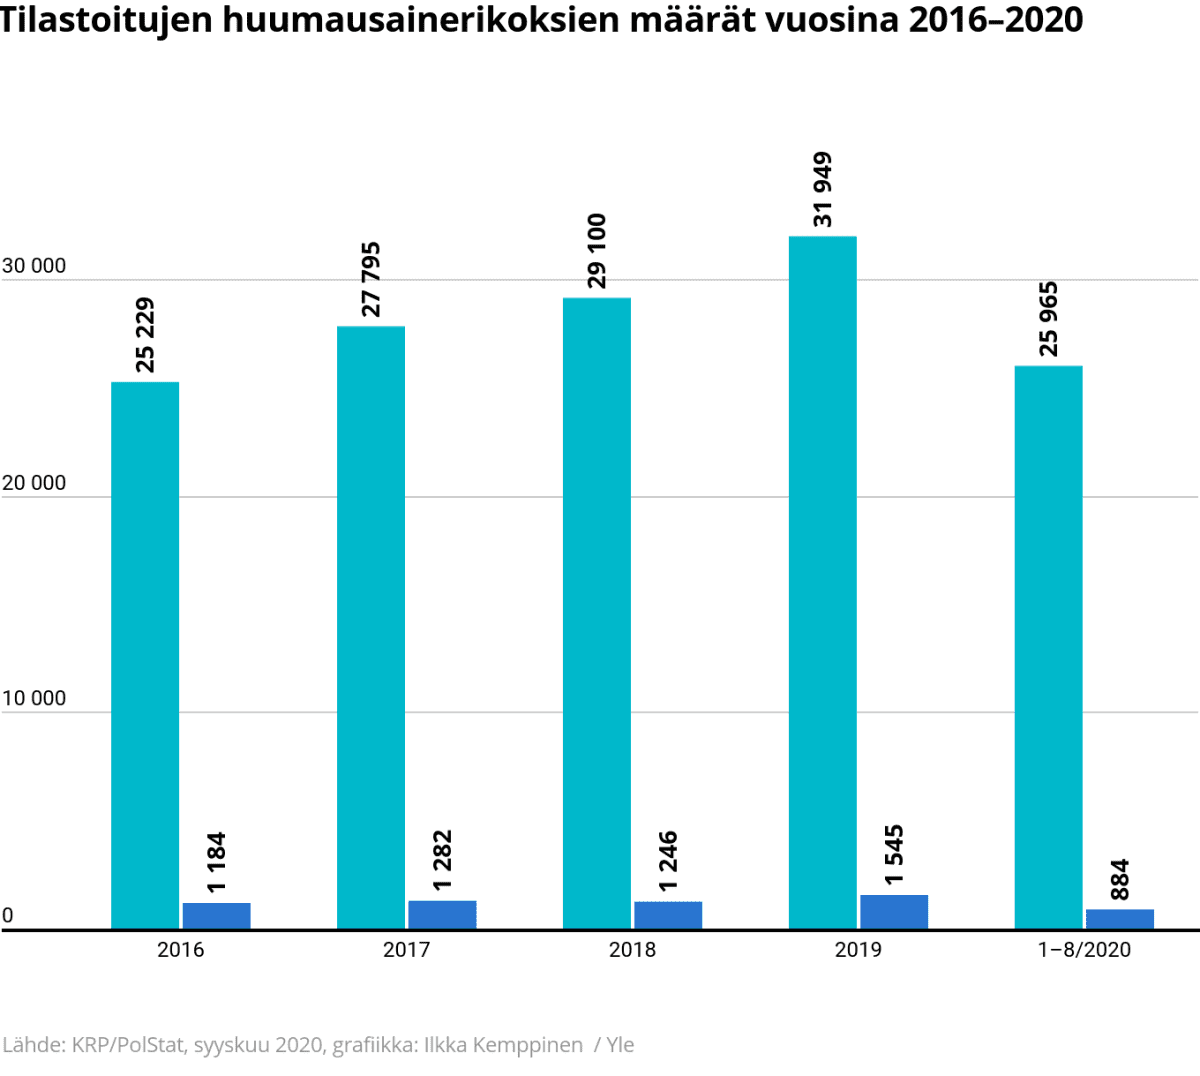 Tilastografiikka tilastoitujen huumausainerikoksien määrästä vuosina 2016–2020.